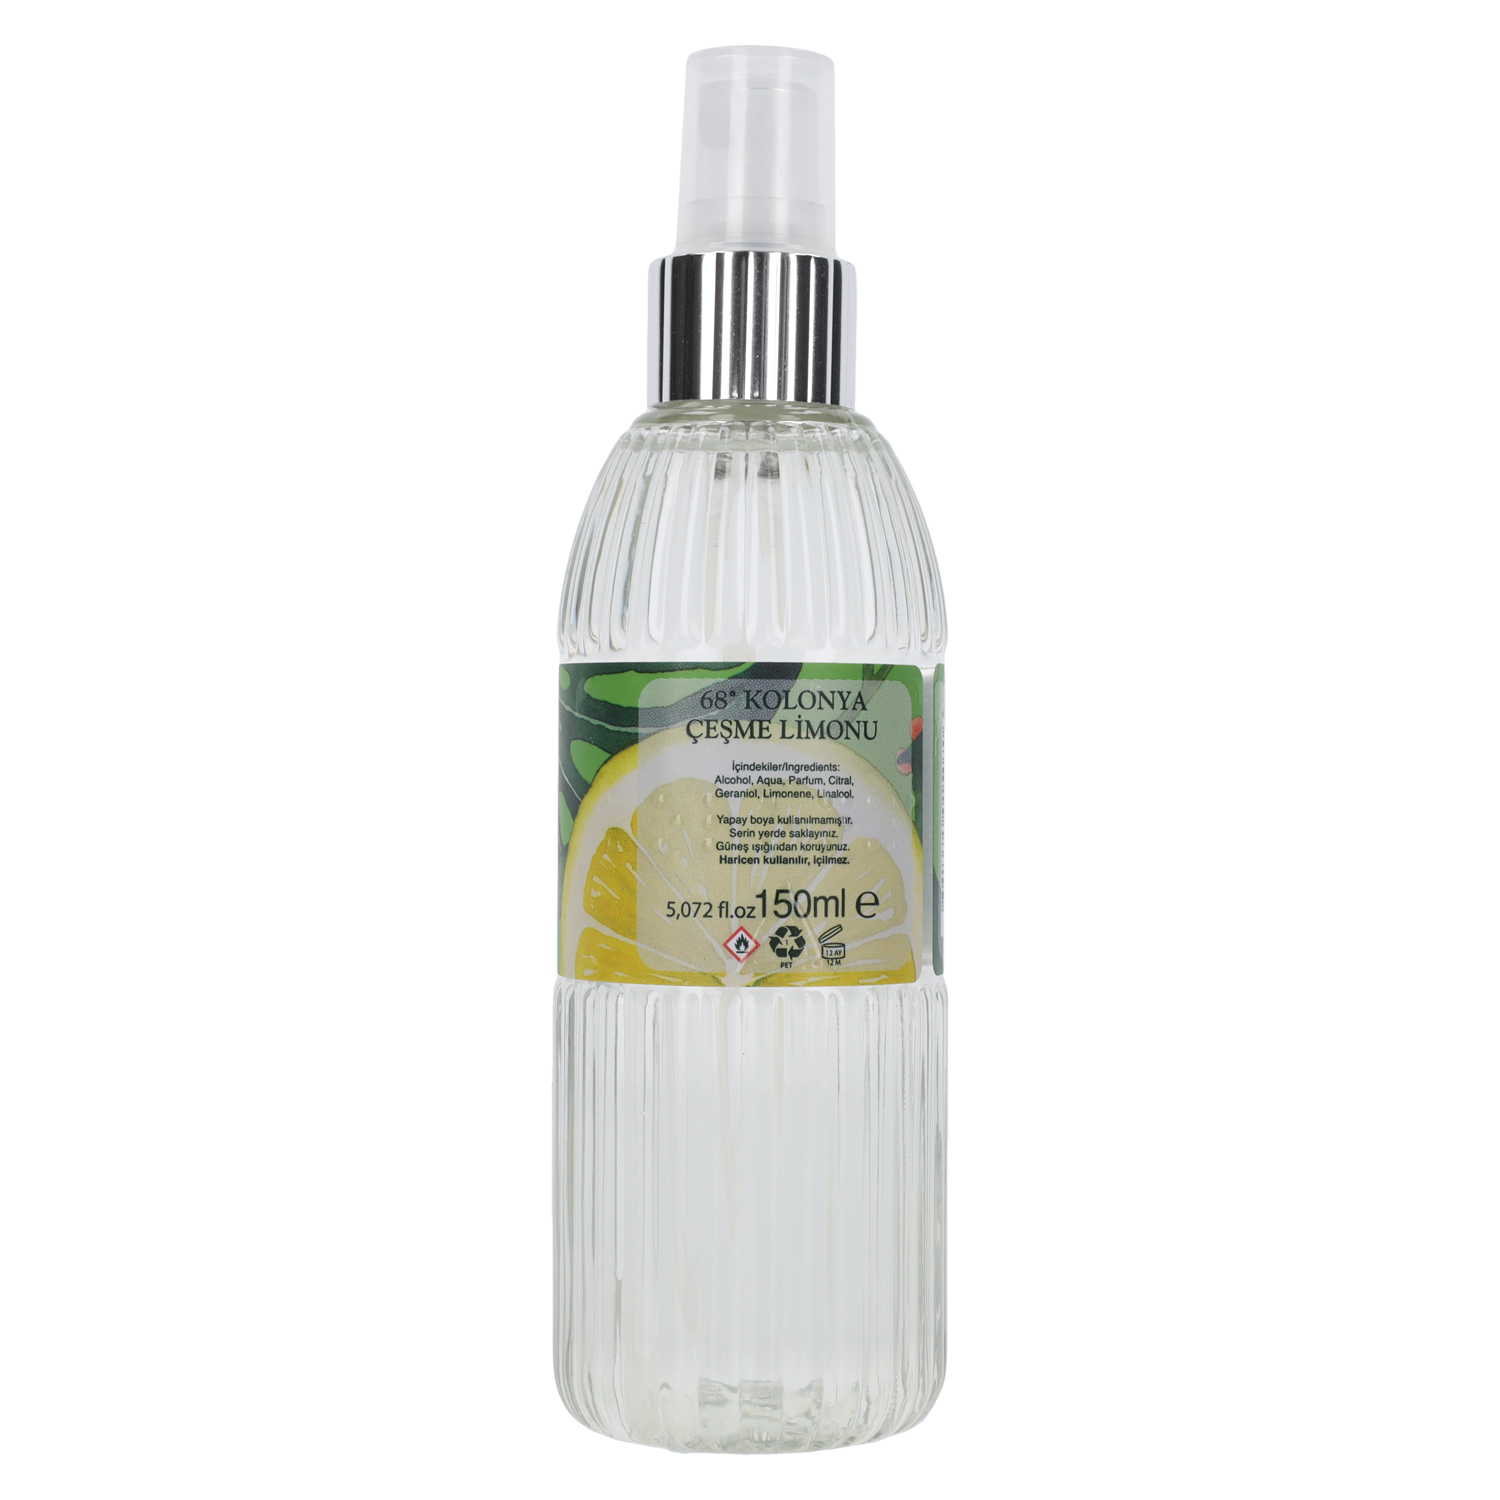 Kolonya Cesme Limonu (Lemon) fragrancy 150 ml Spray